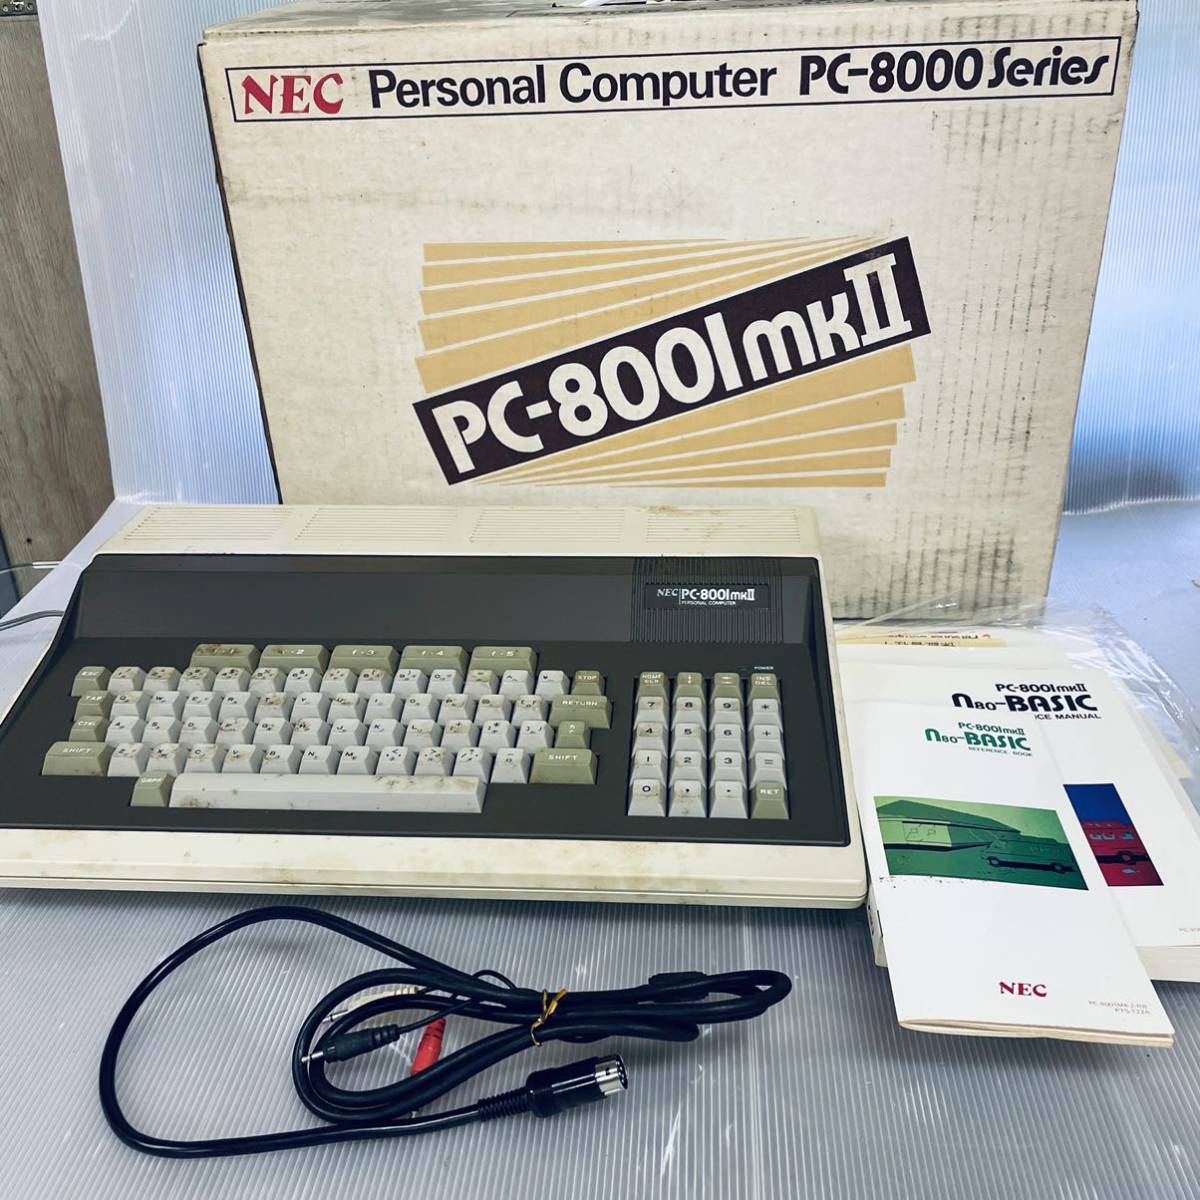 通電確認のみ・箱説明書あり】NEC PC-8000シリーズ PC-800lmkⅡ キーボード 日本電気株式会社 カイテキ